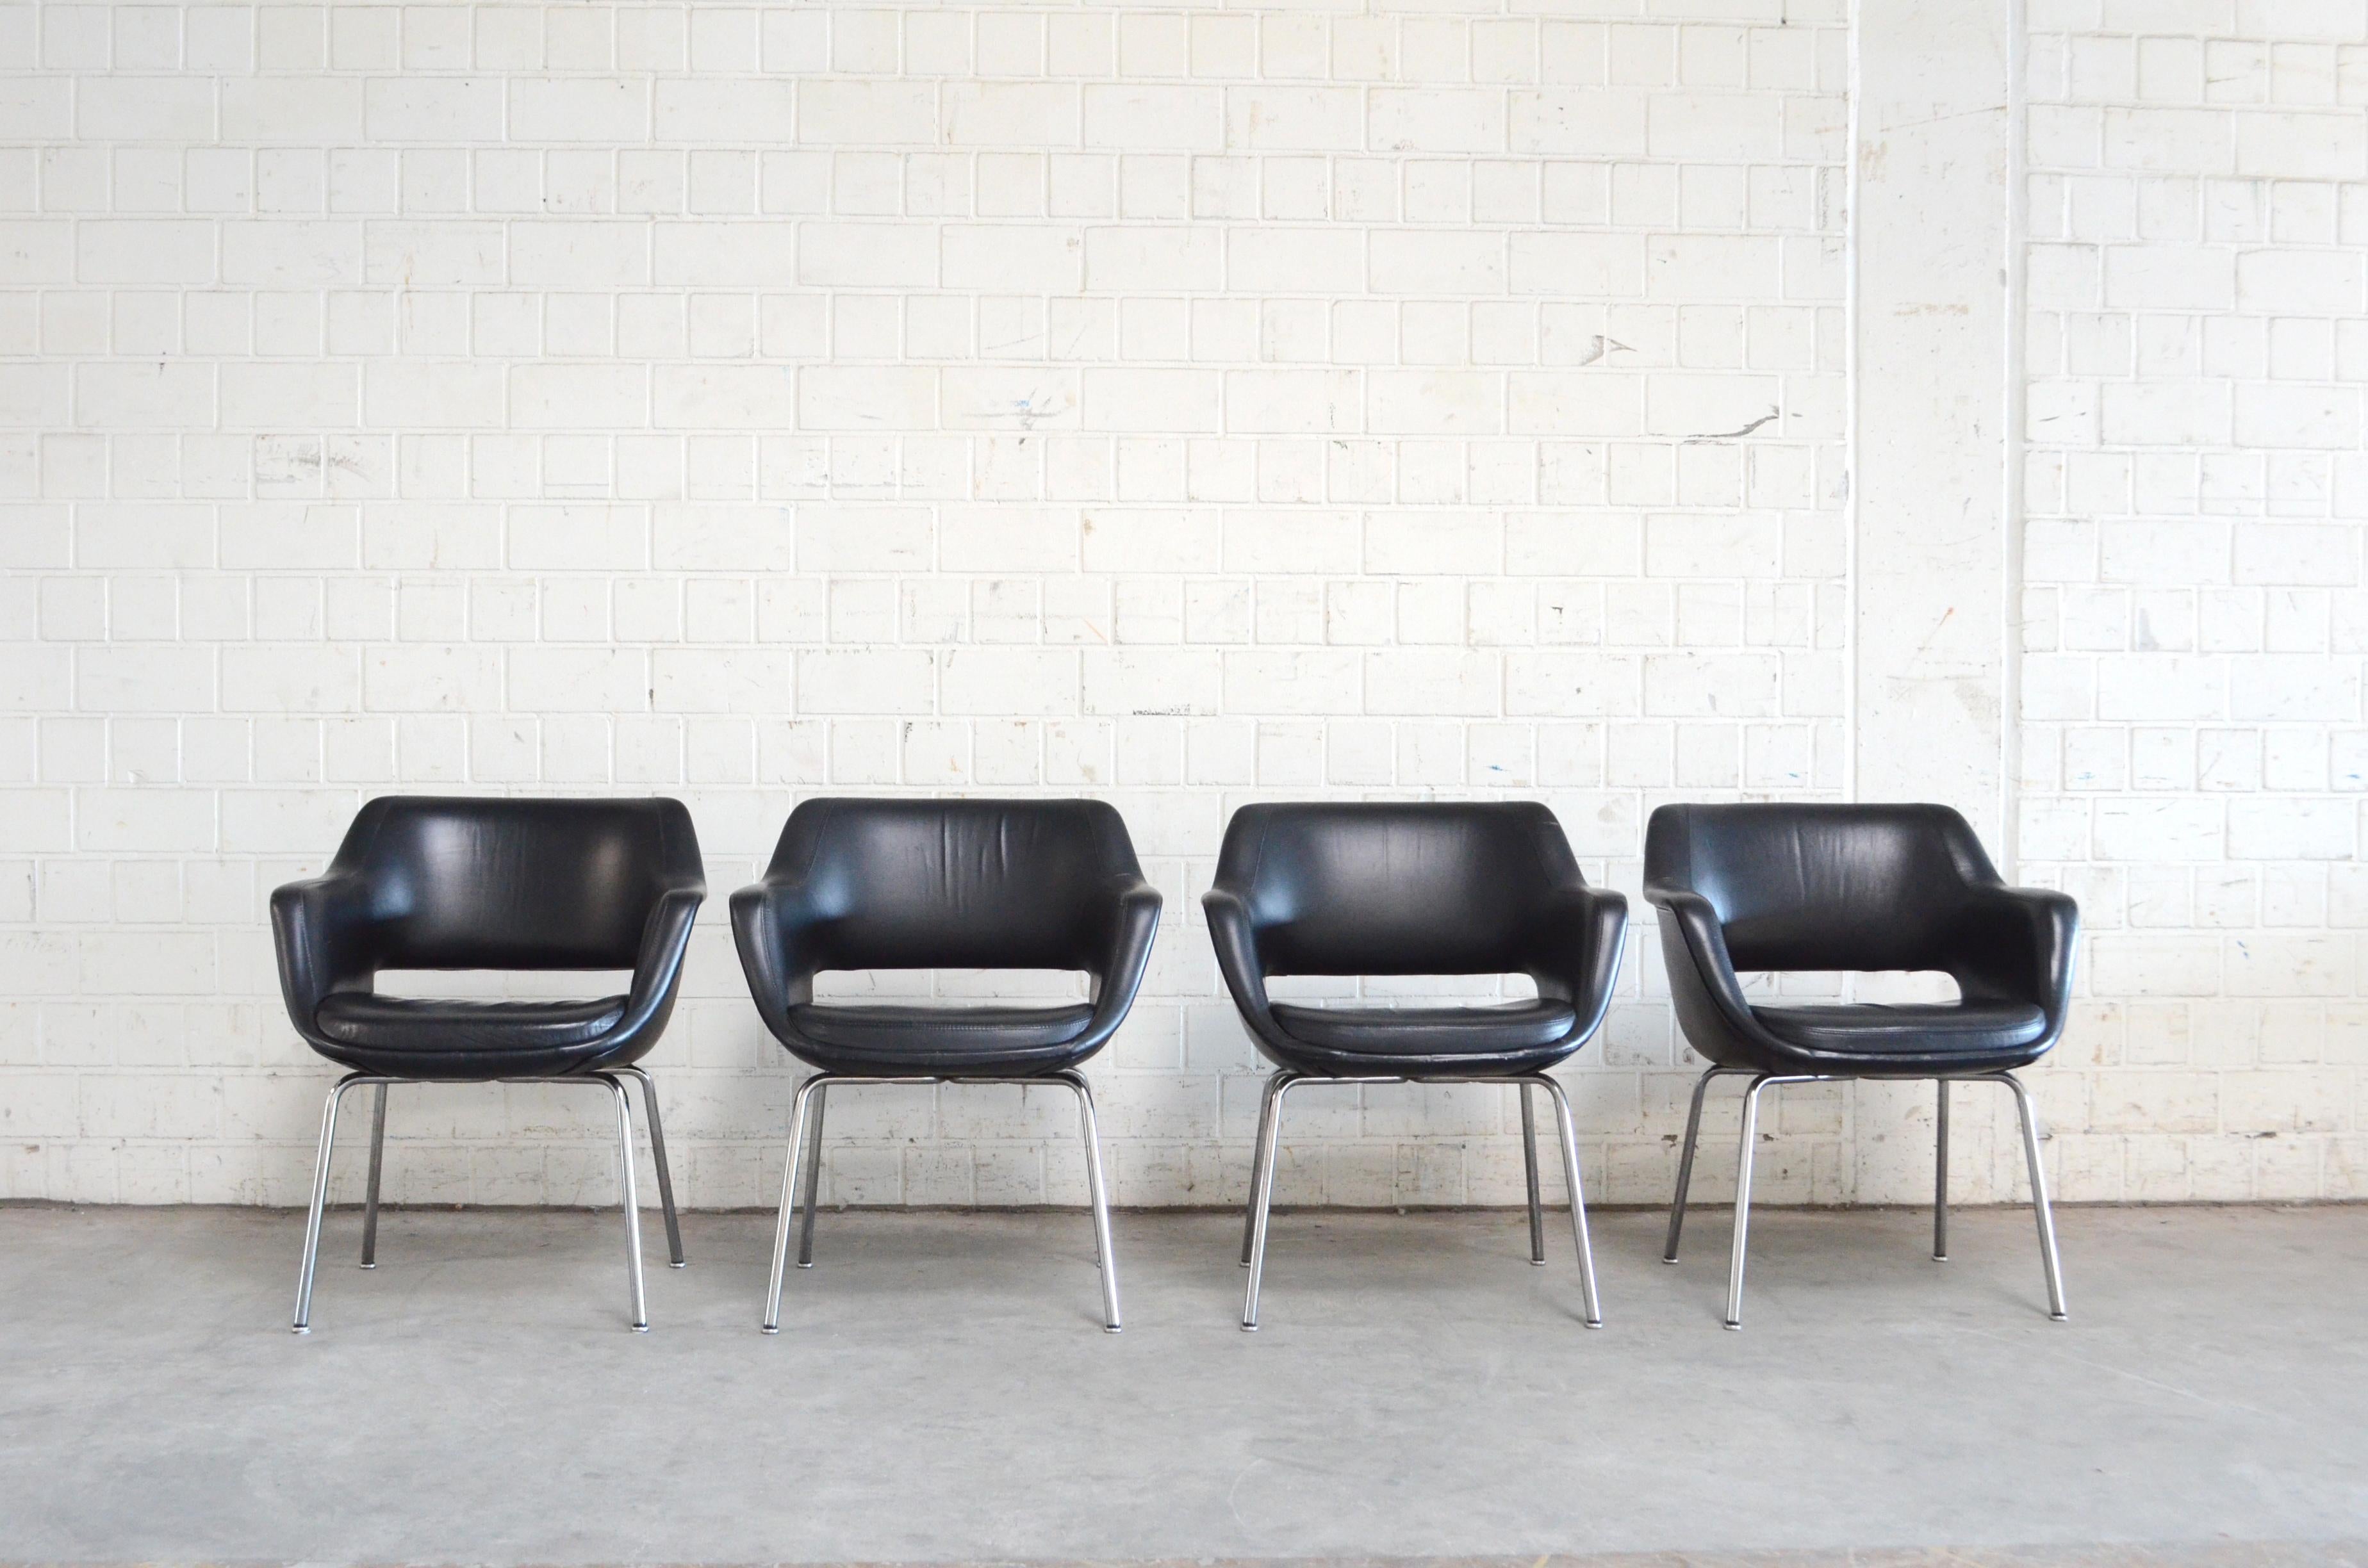 Dieses Modell Kilta wurde 1955 von dem finnischen Designer Olli Mannermaa für Martela entworfen.
Der Kilta-Stuhl ist ein finnischer Designklassiker. Das zeitlose Design und der bequeme Sitz von Kilta garantieren seine anhaltende Beliebtheit.
Es